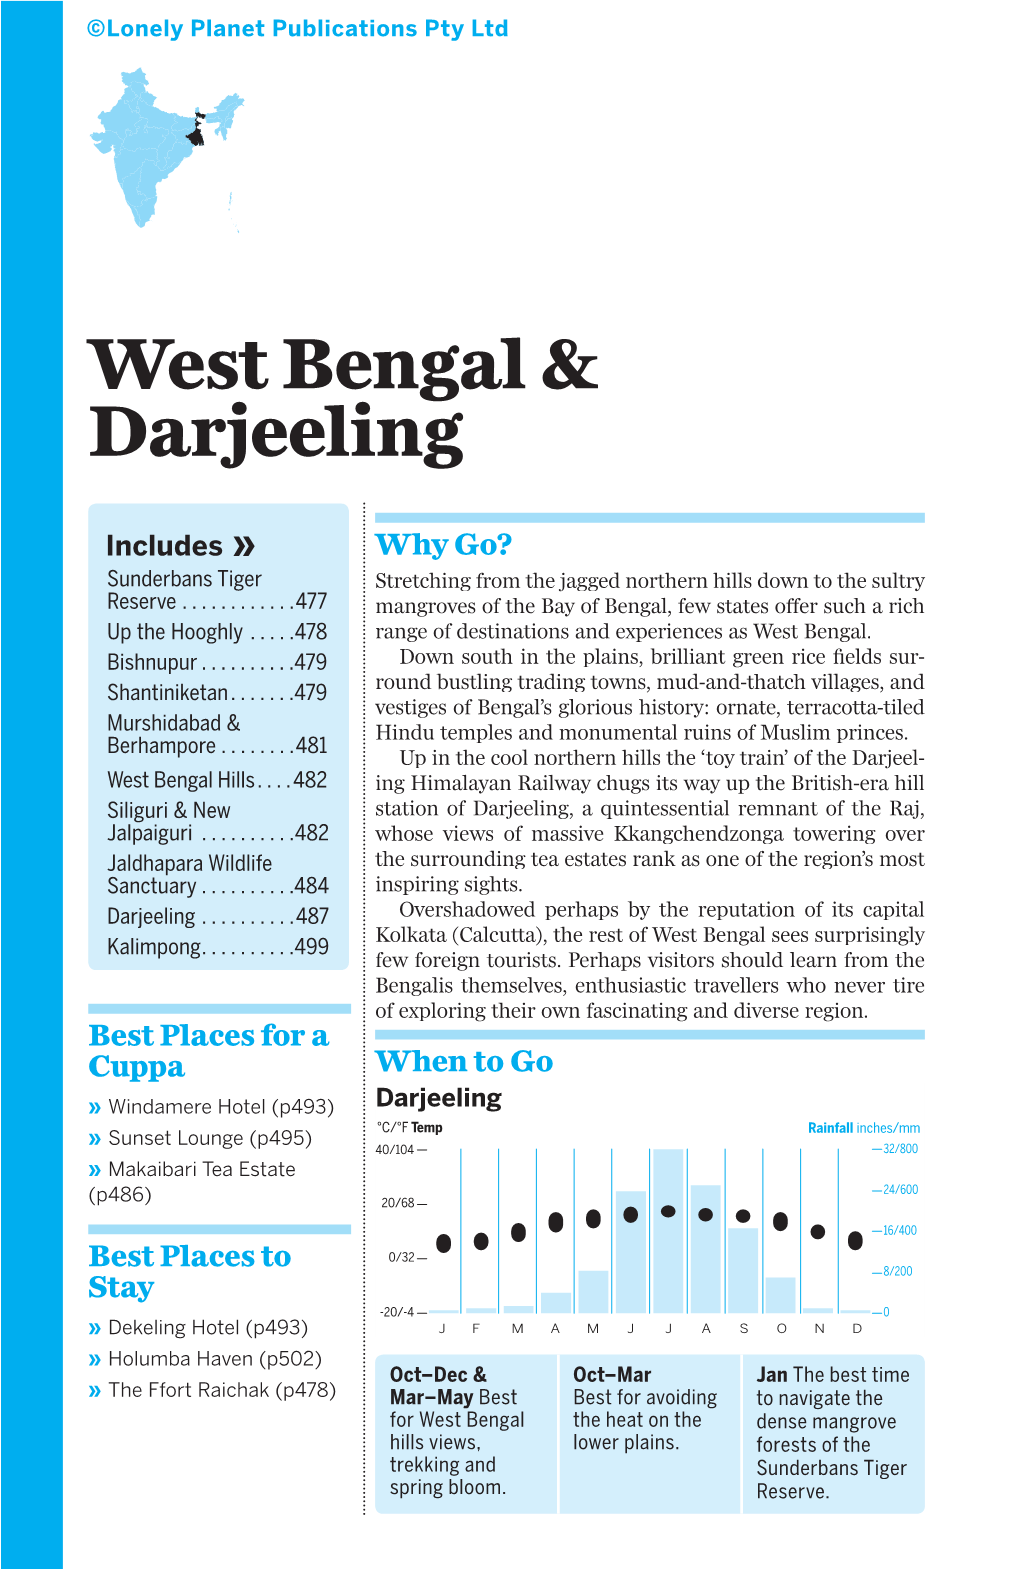 West Bengal & Darjeeling